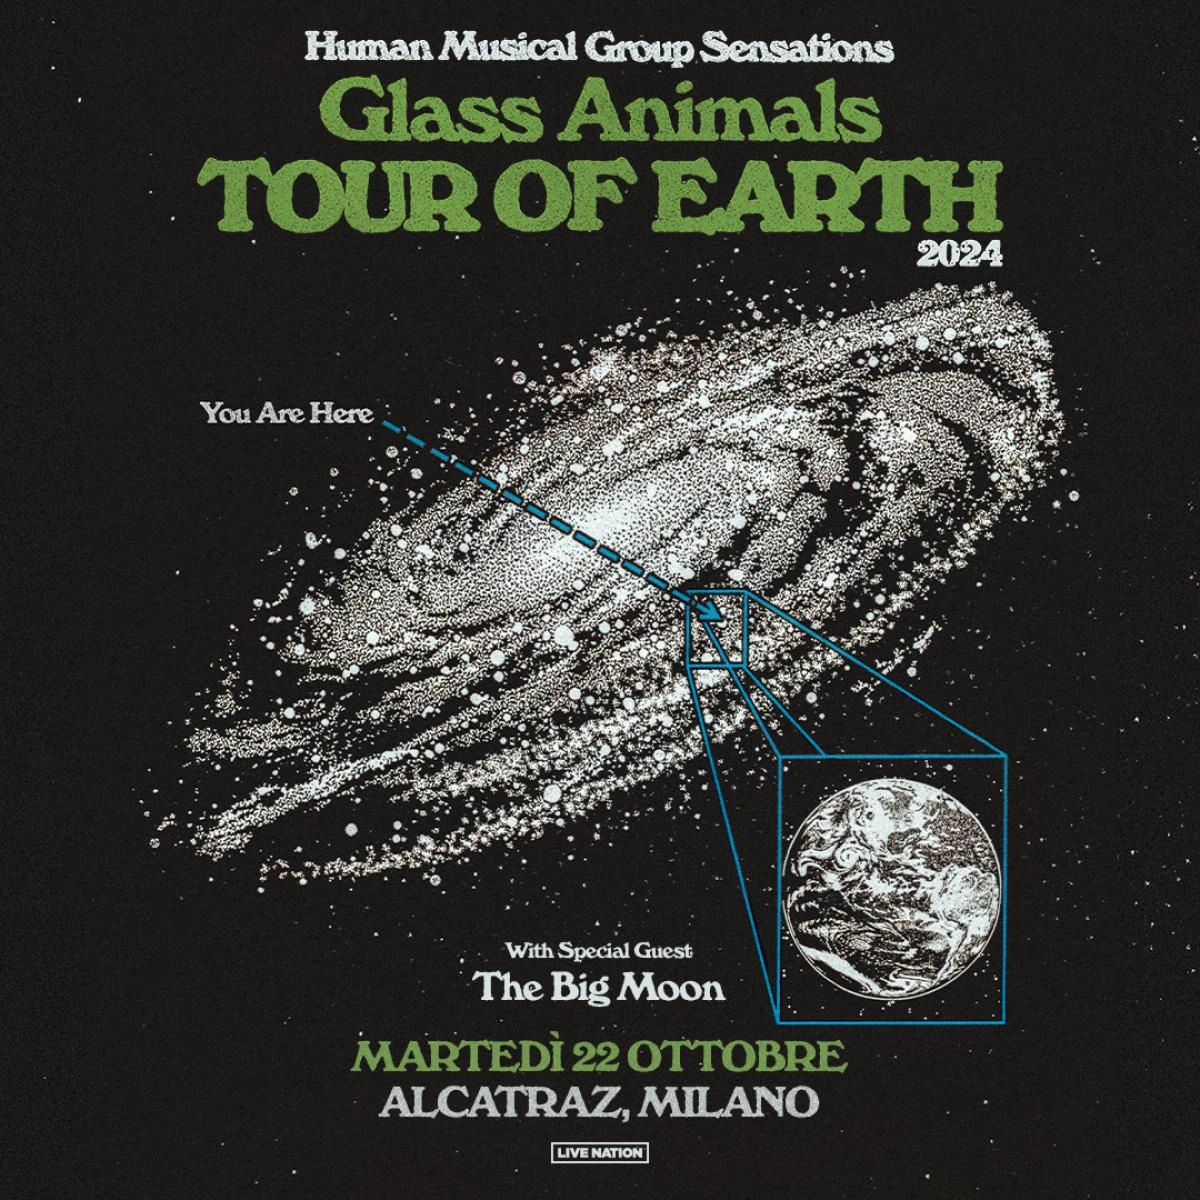 Glass Animals in der Alcatraz Mailand Tickets